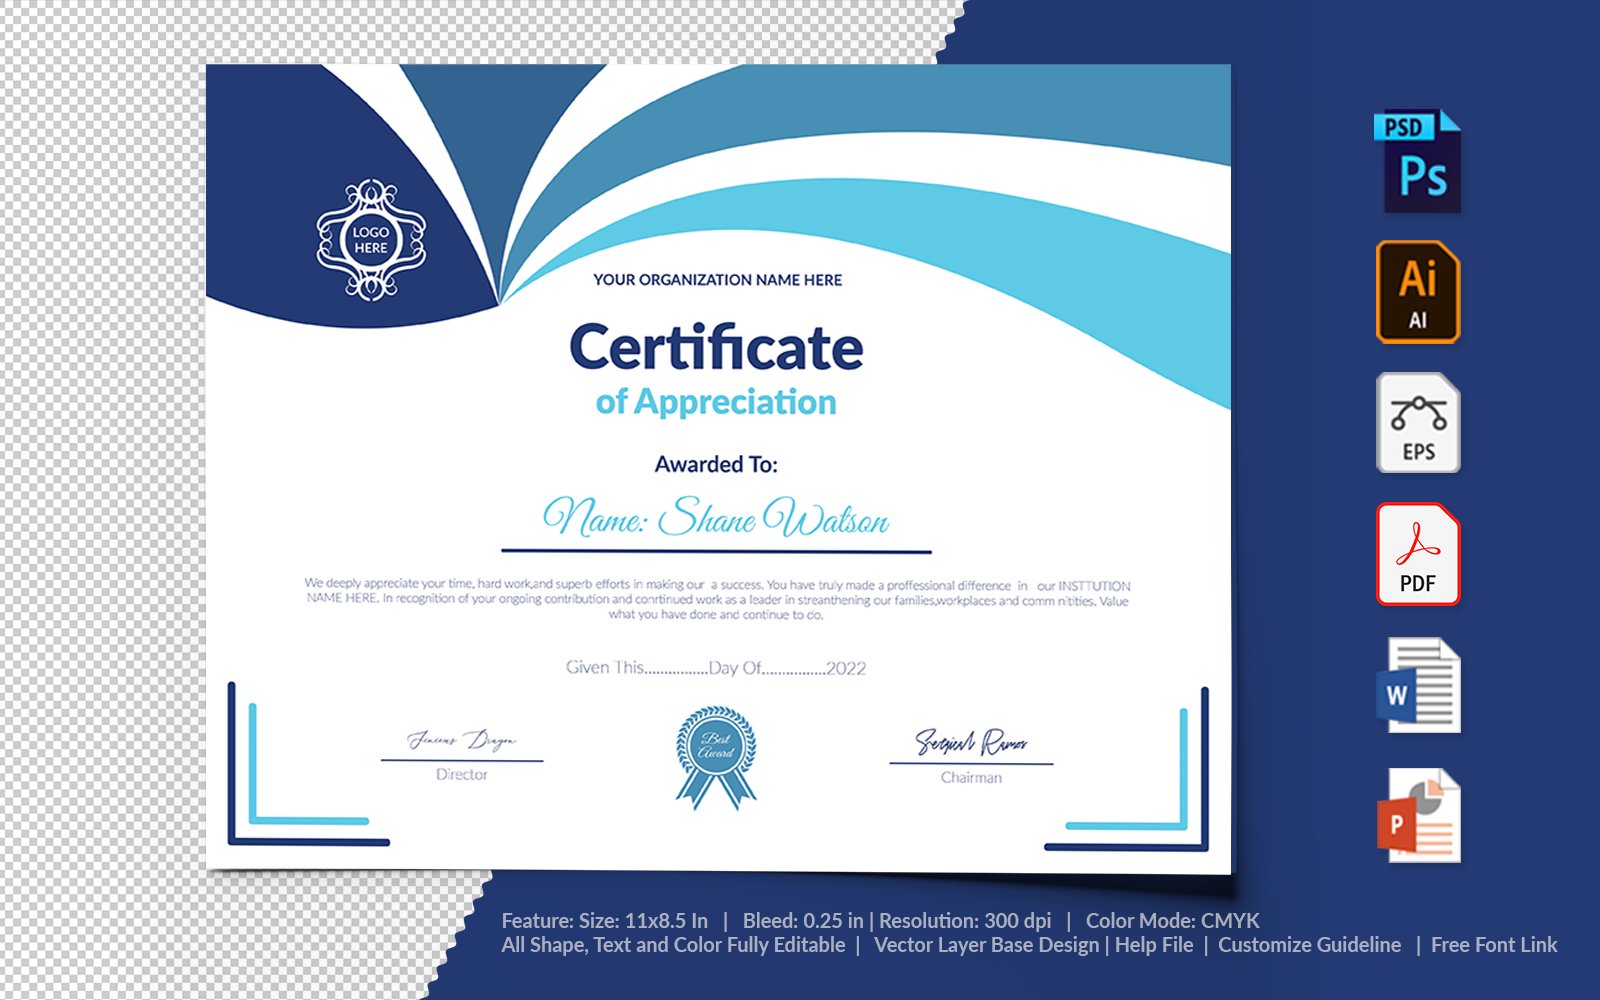 Kit Graphique #104730 Certificate Appreciation Divers Modles Web - Logo template Preview